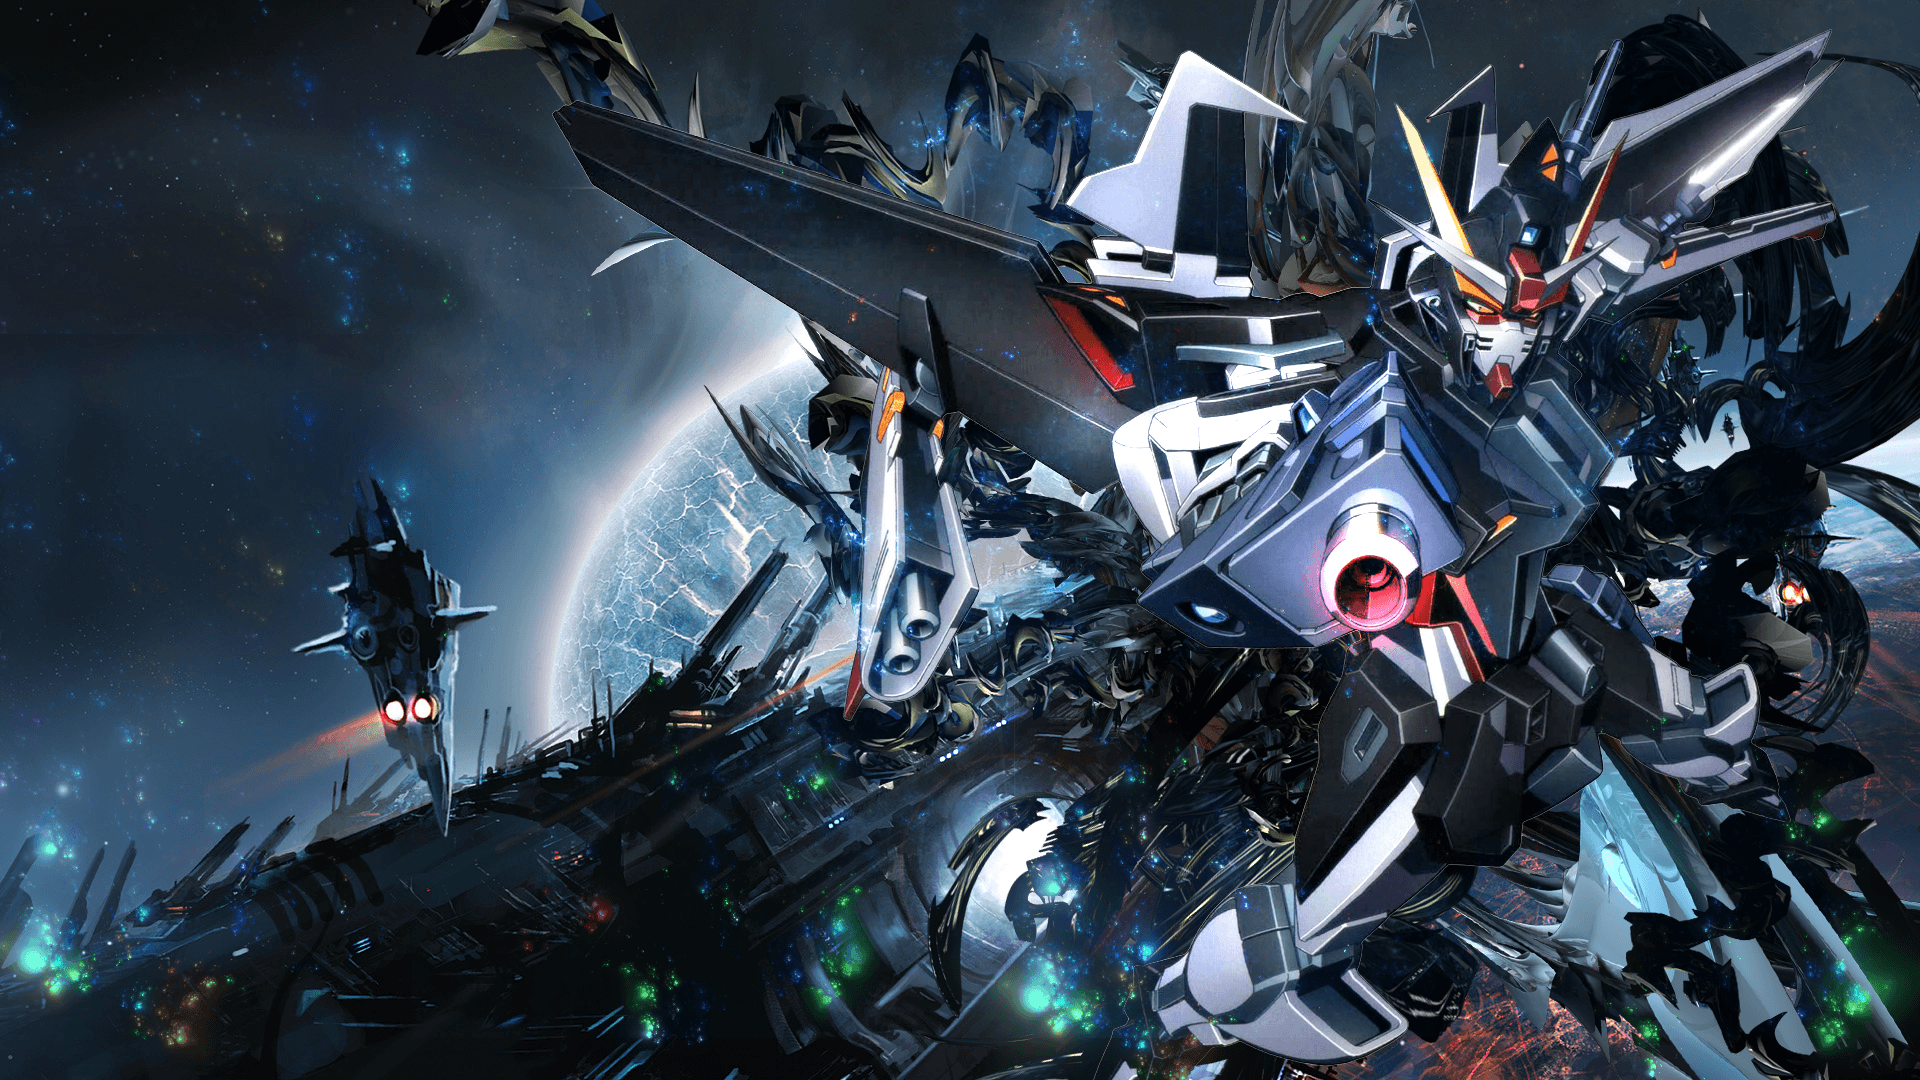 Gundam Desktop Wallpapers - Top Những Hình Ảnh Đẹp